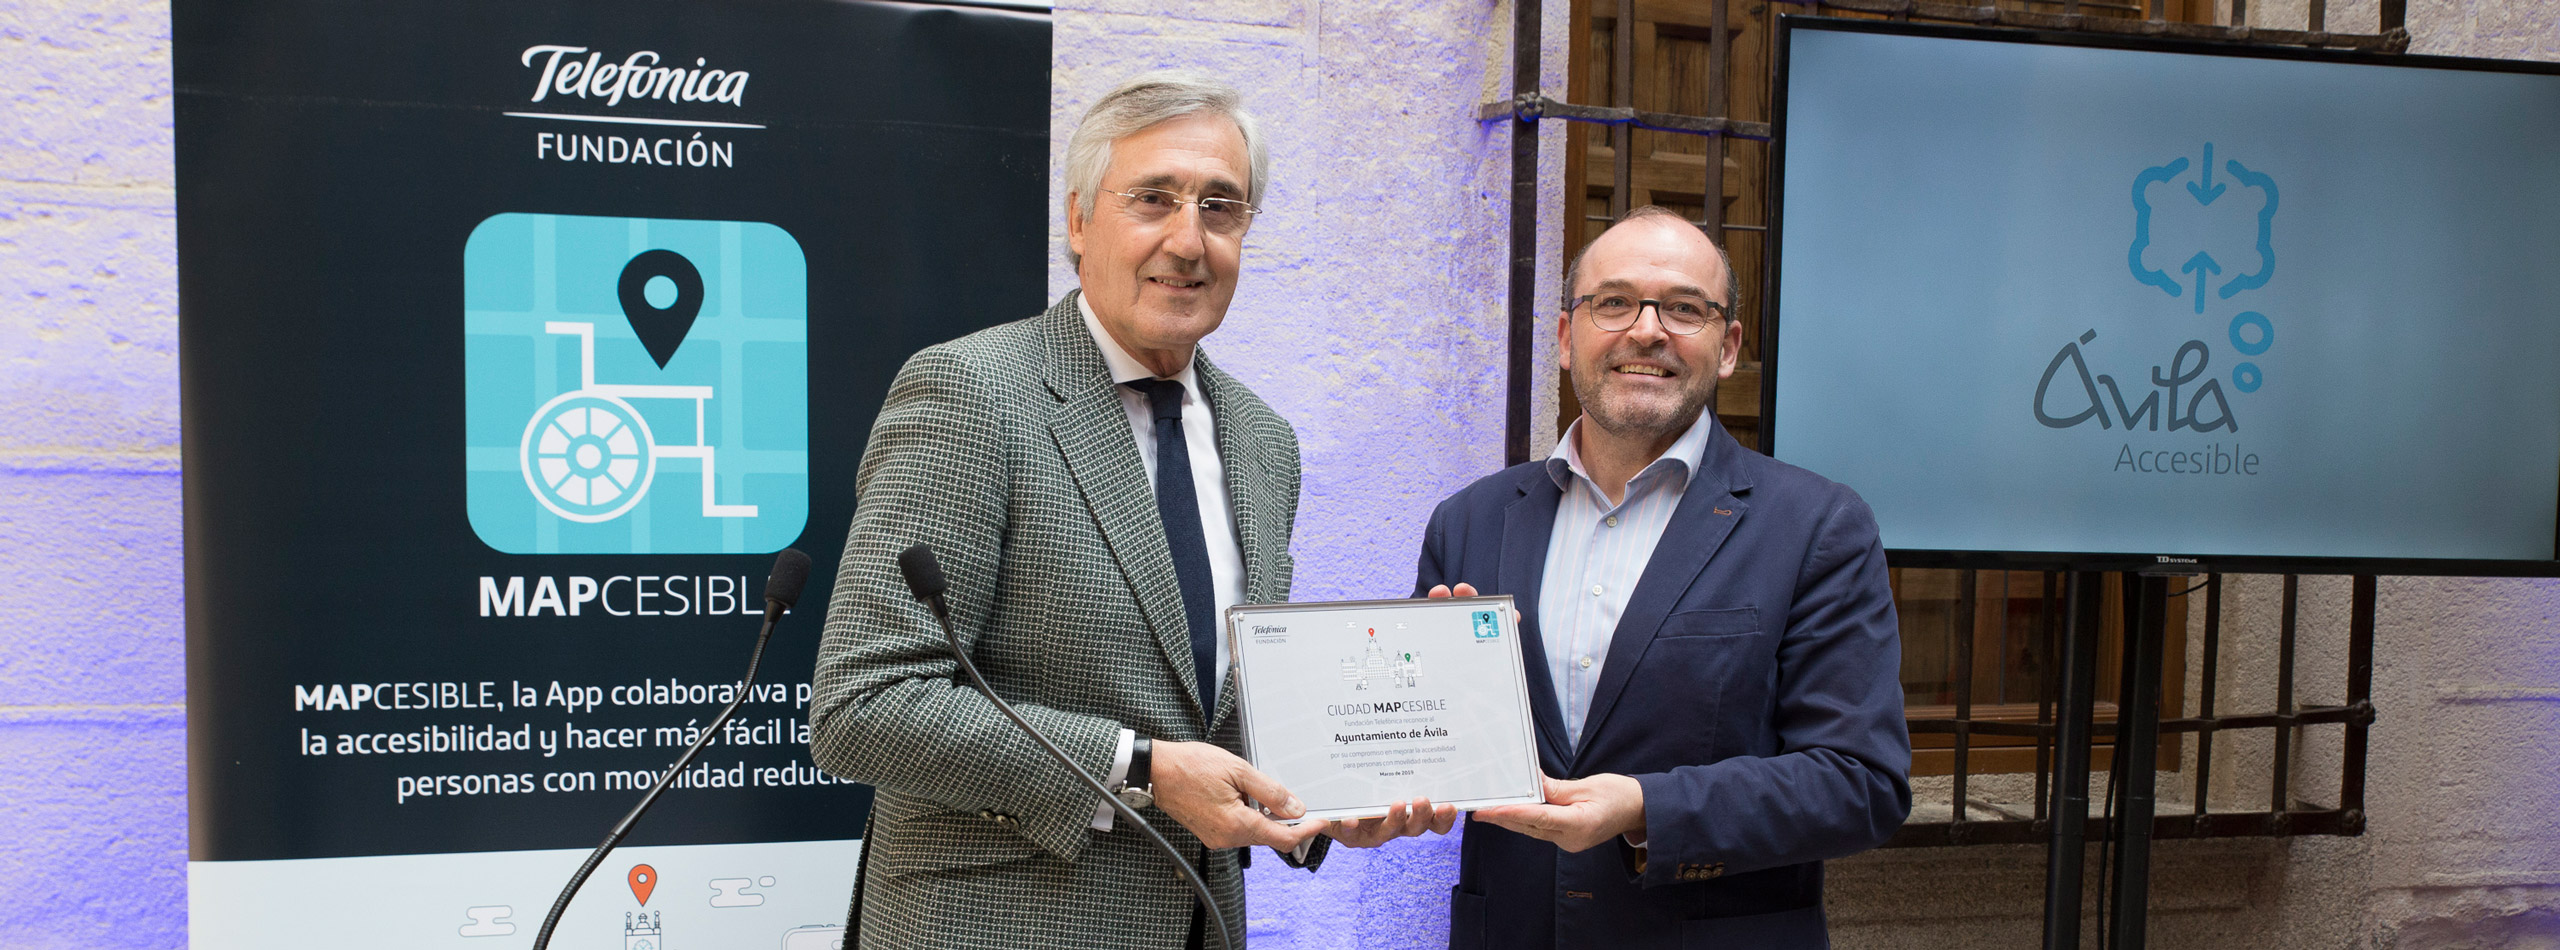 Ávila recibe el diploma de 'Ciudad Mapcesible' por su accesibilidad 